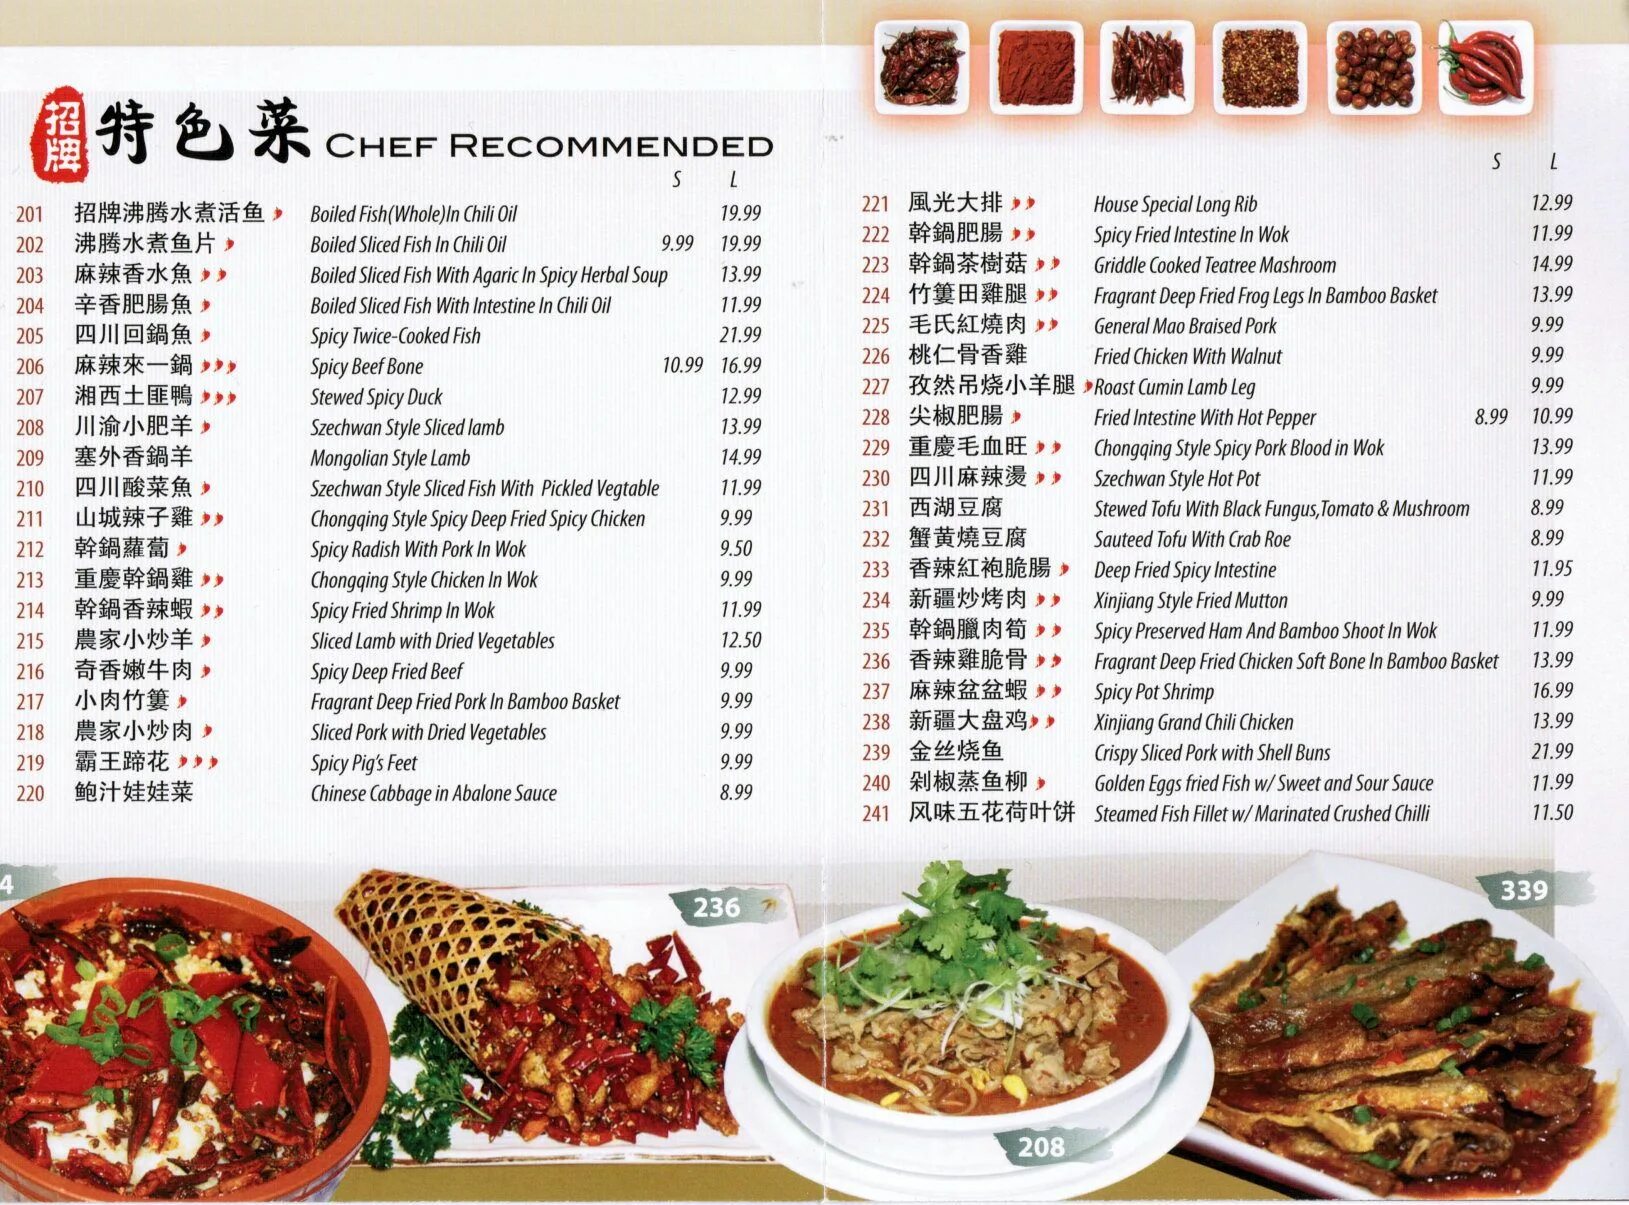 Меню ресторана китая. Китайские блюда меню. Китайское меню. Меню китайского кафе. Меню ресторана на китайском языке.